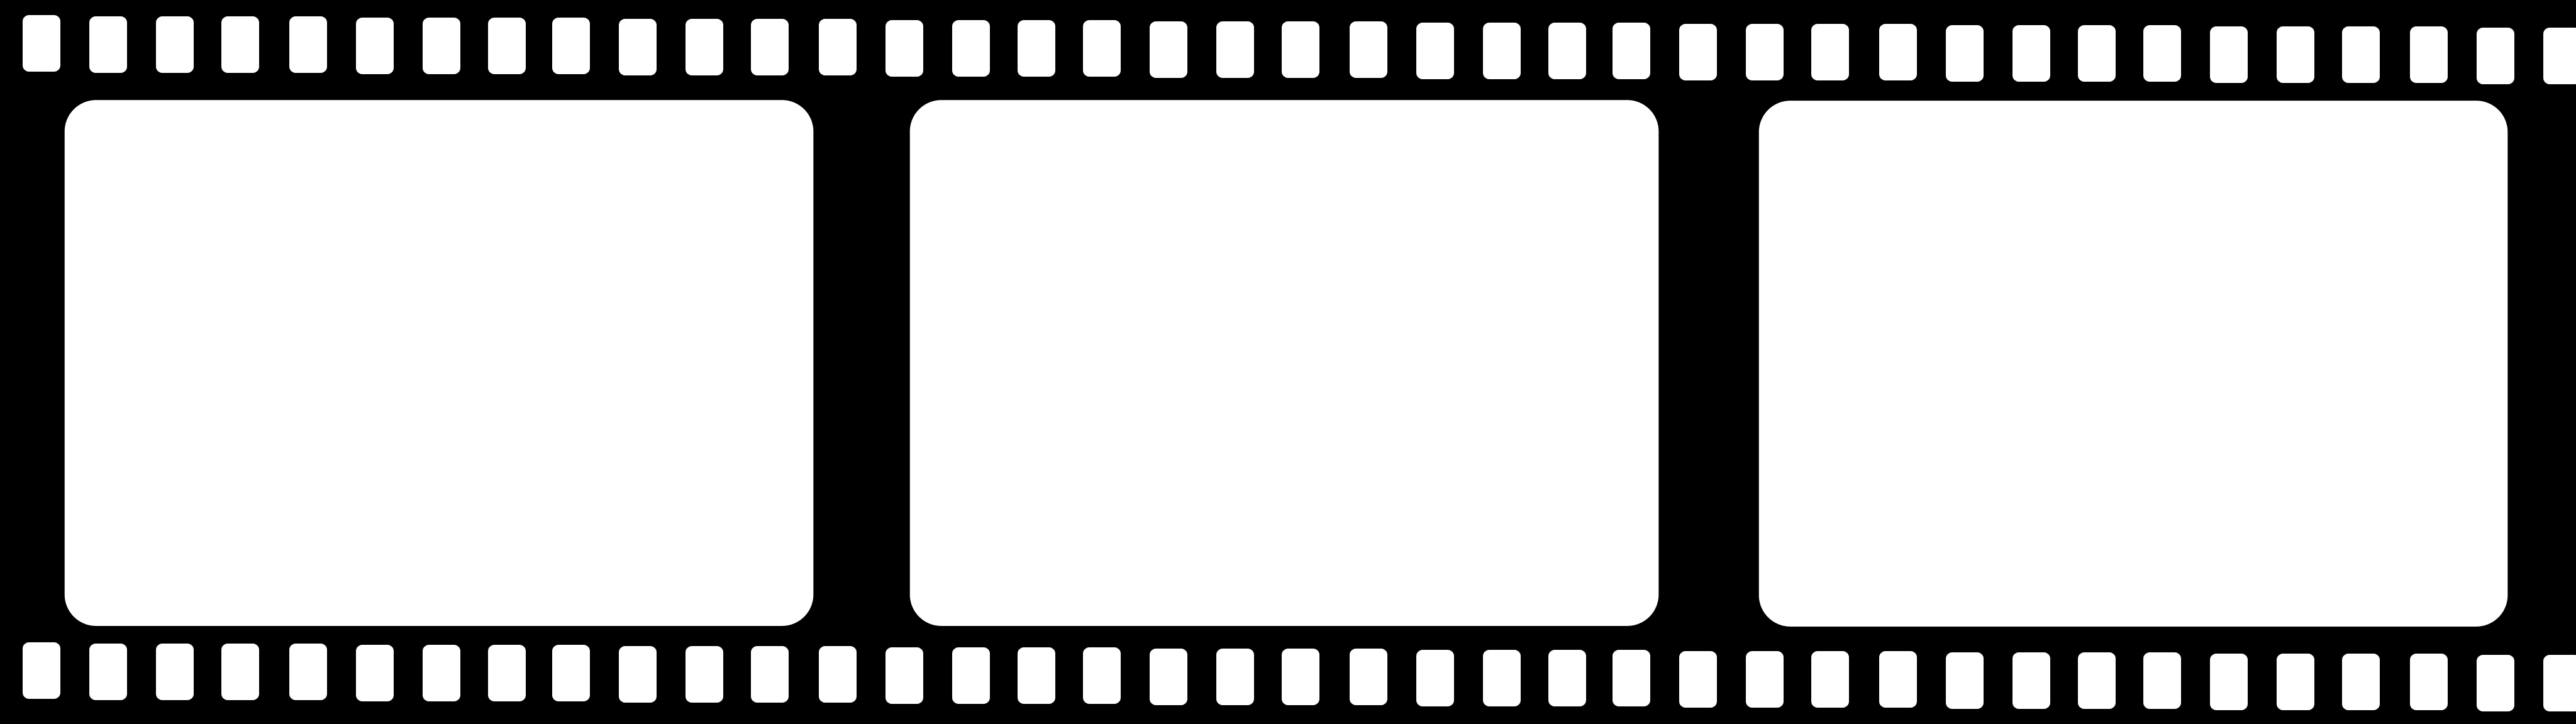 Movie Film Reel Clipart 